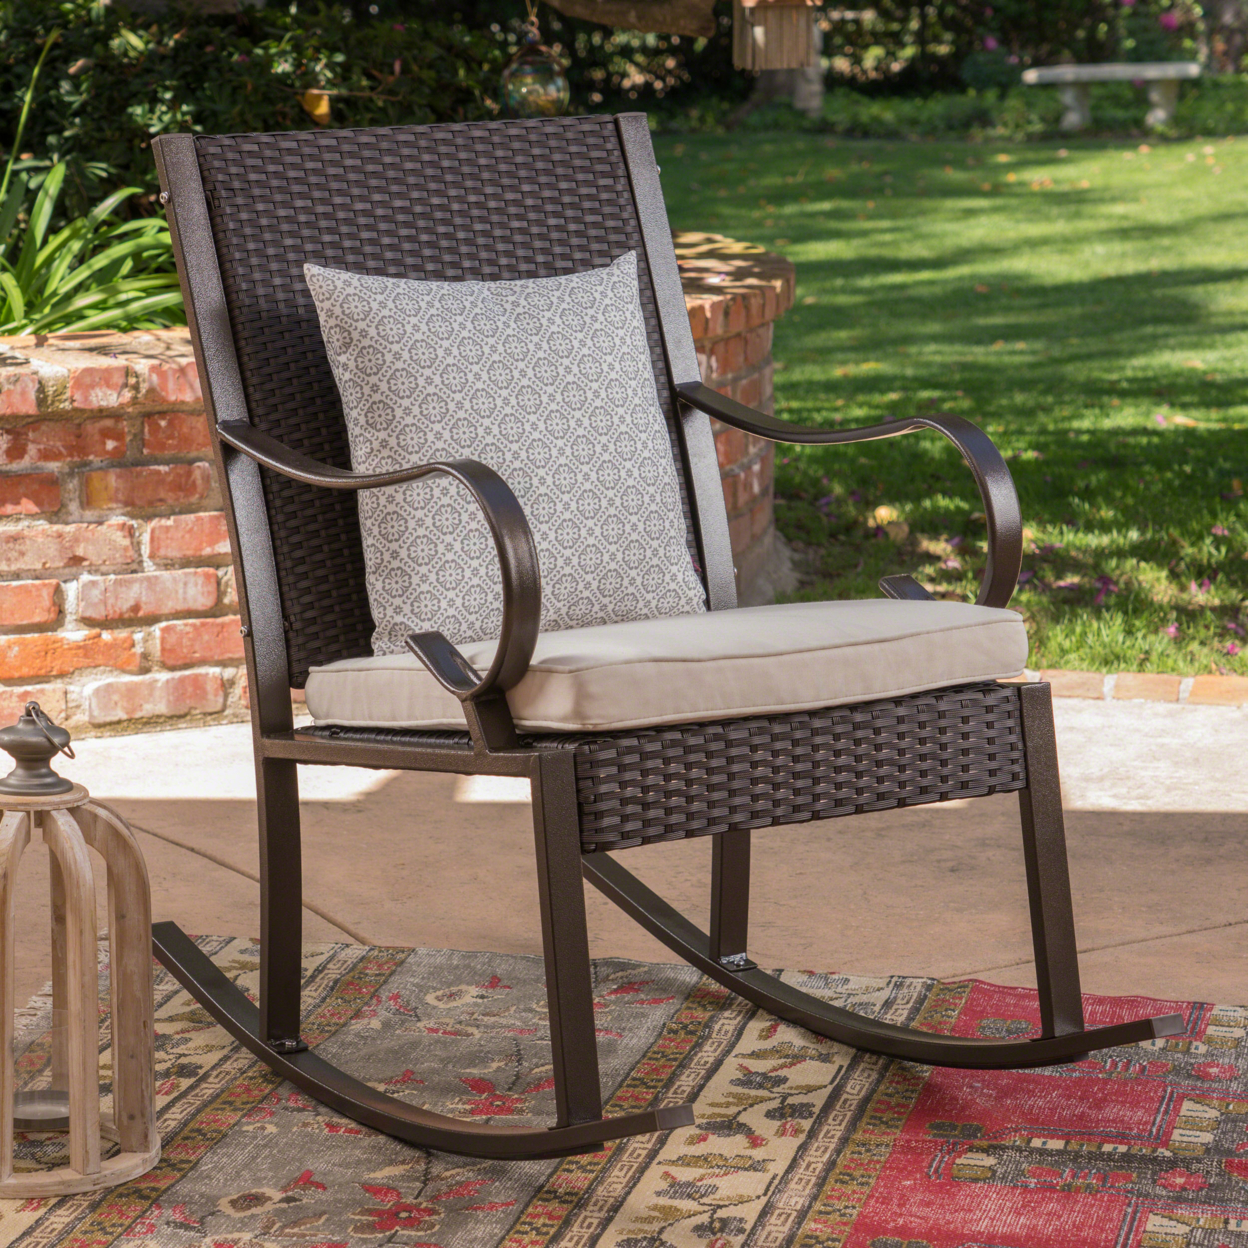 Muriel Outdoor Wicker Rocking Chair With Cushion - Dark Brown/Cream, Single